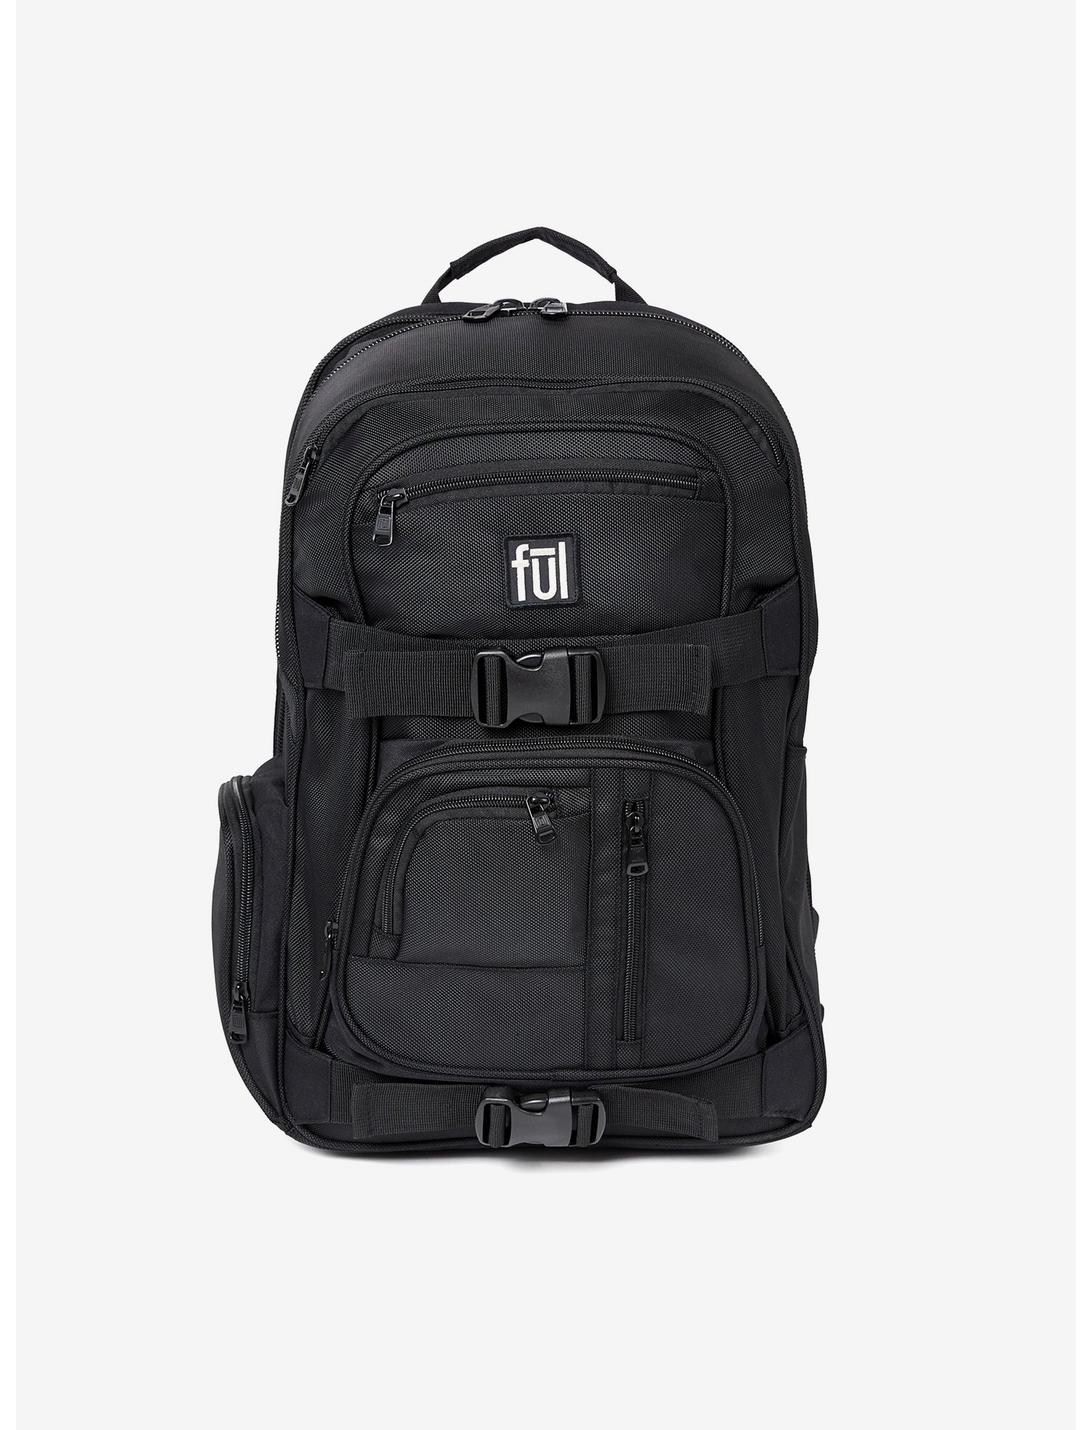 FUL Rush 18 Laptop Backpack, , hi-res